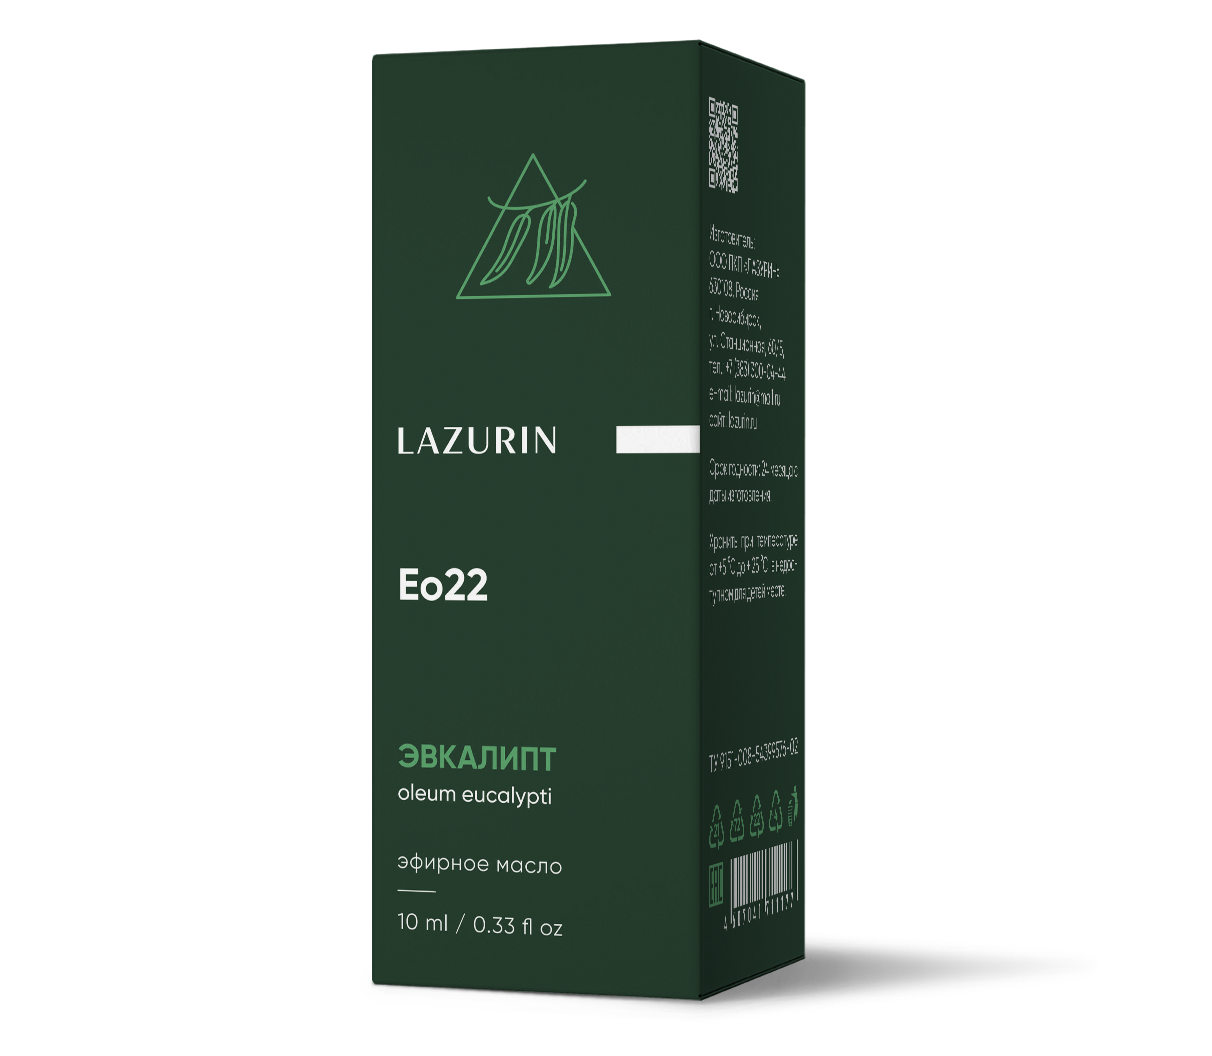 Эфирное масло Lazurin эвкалипт 10мл